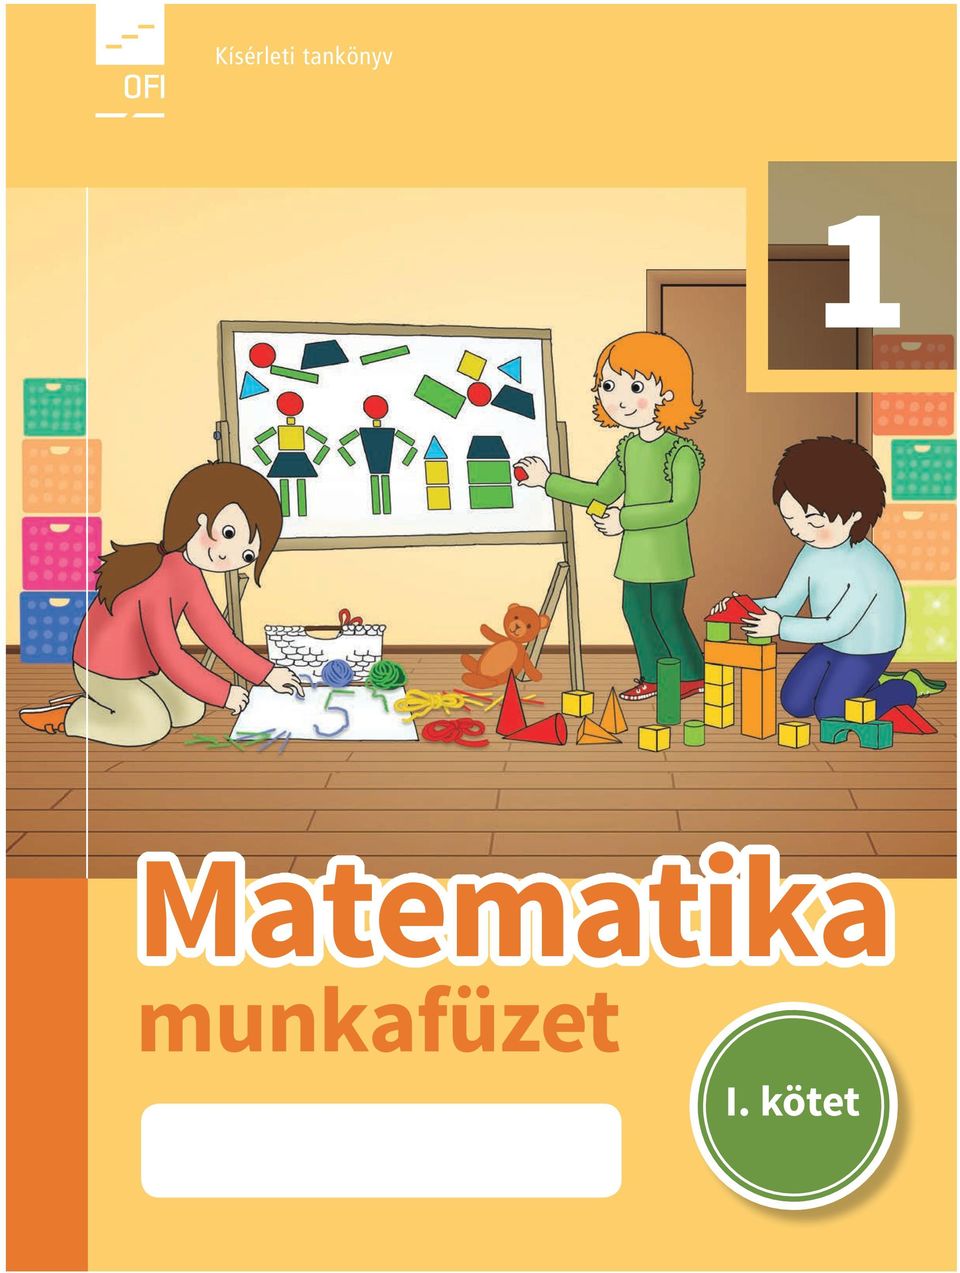 Kísérleti tankönyv. Matematika. munkafüzet. I. kötet - PDF Ingyenes letöltés